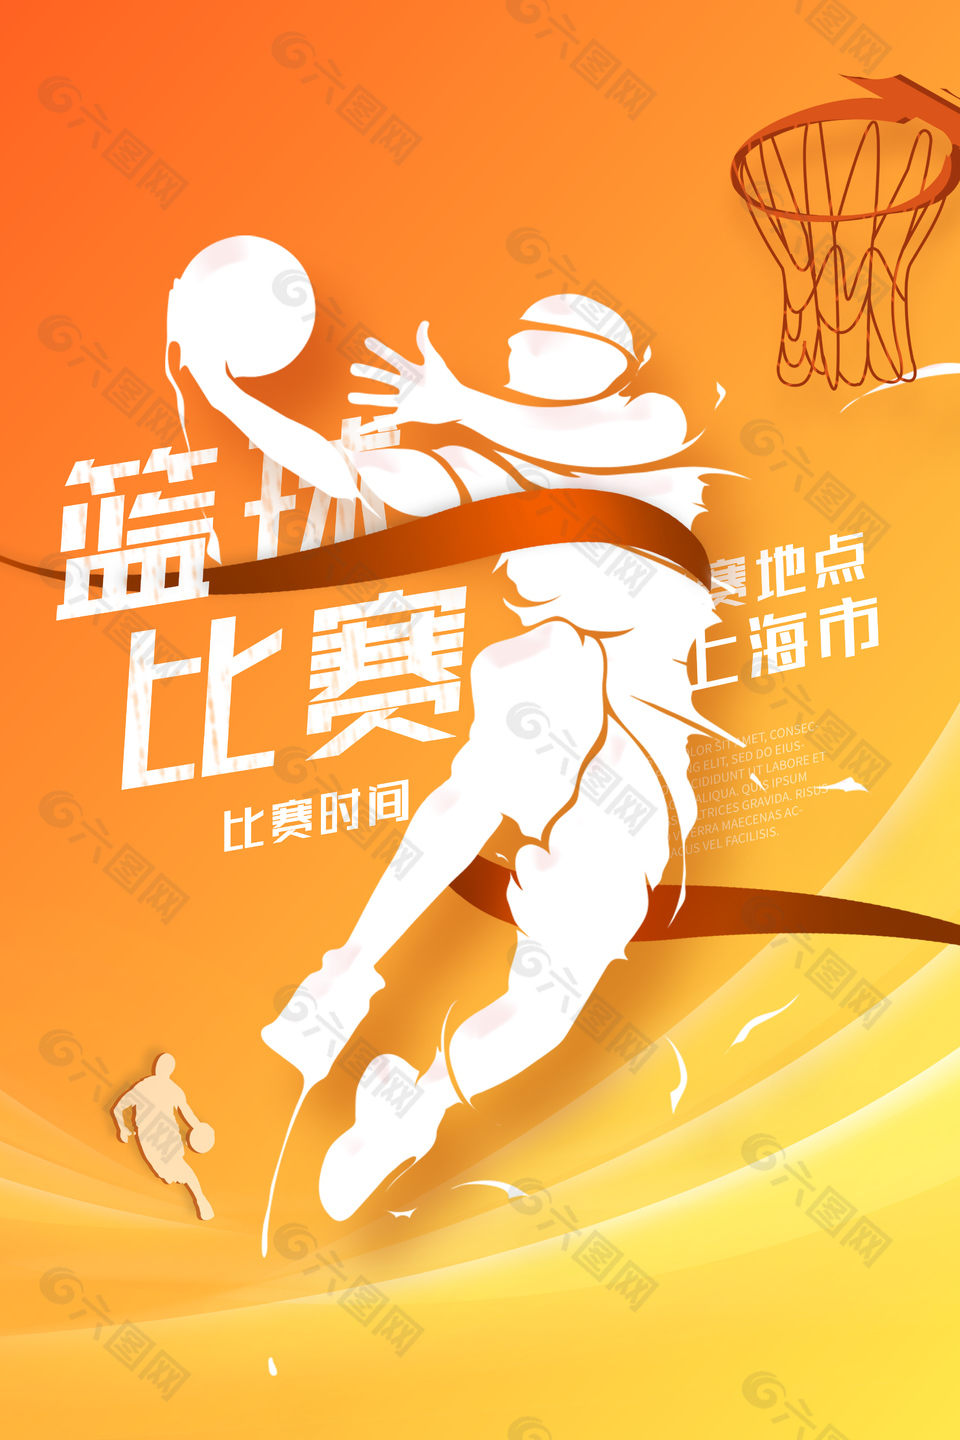 篮球赛创意插画背景海报